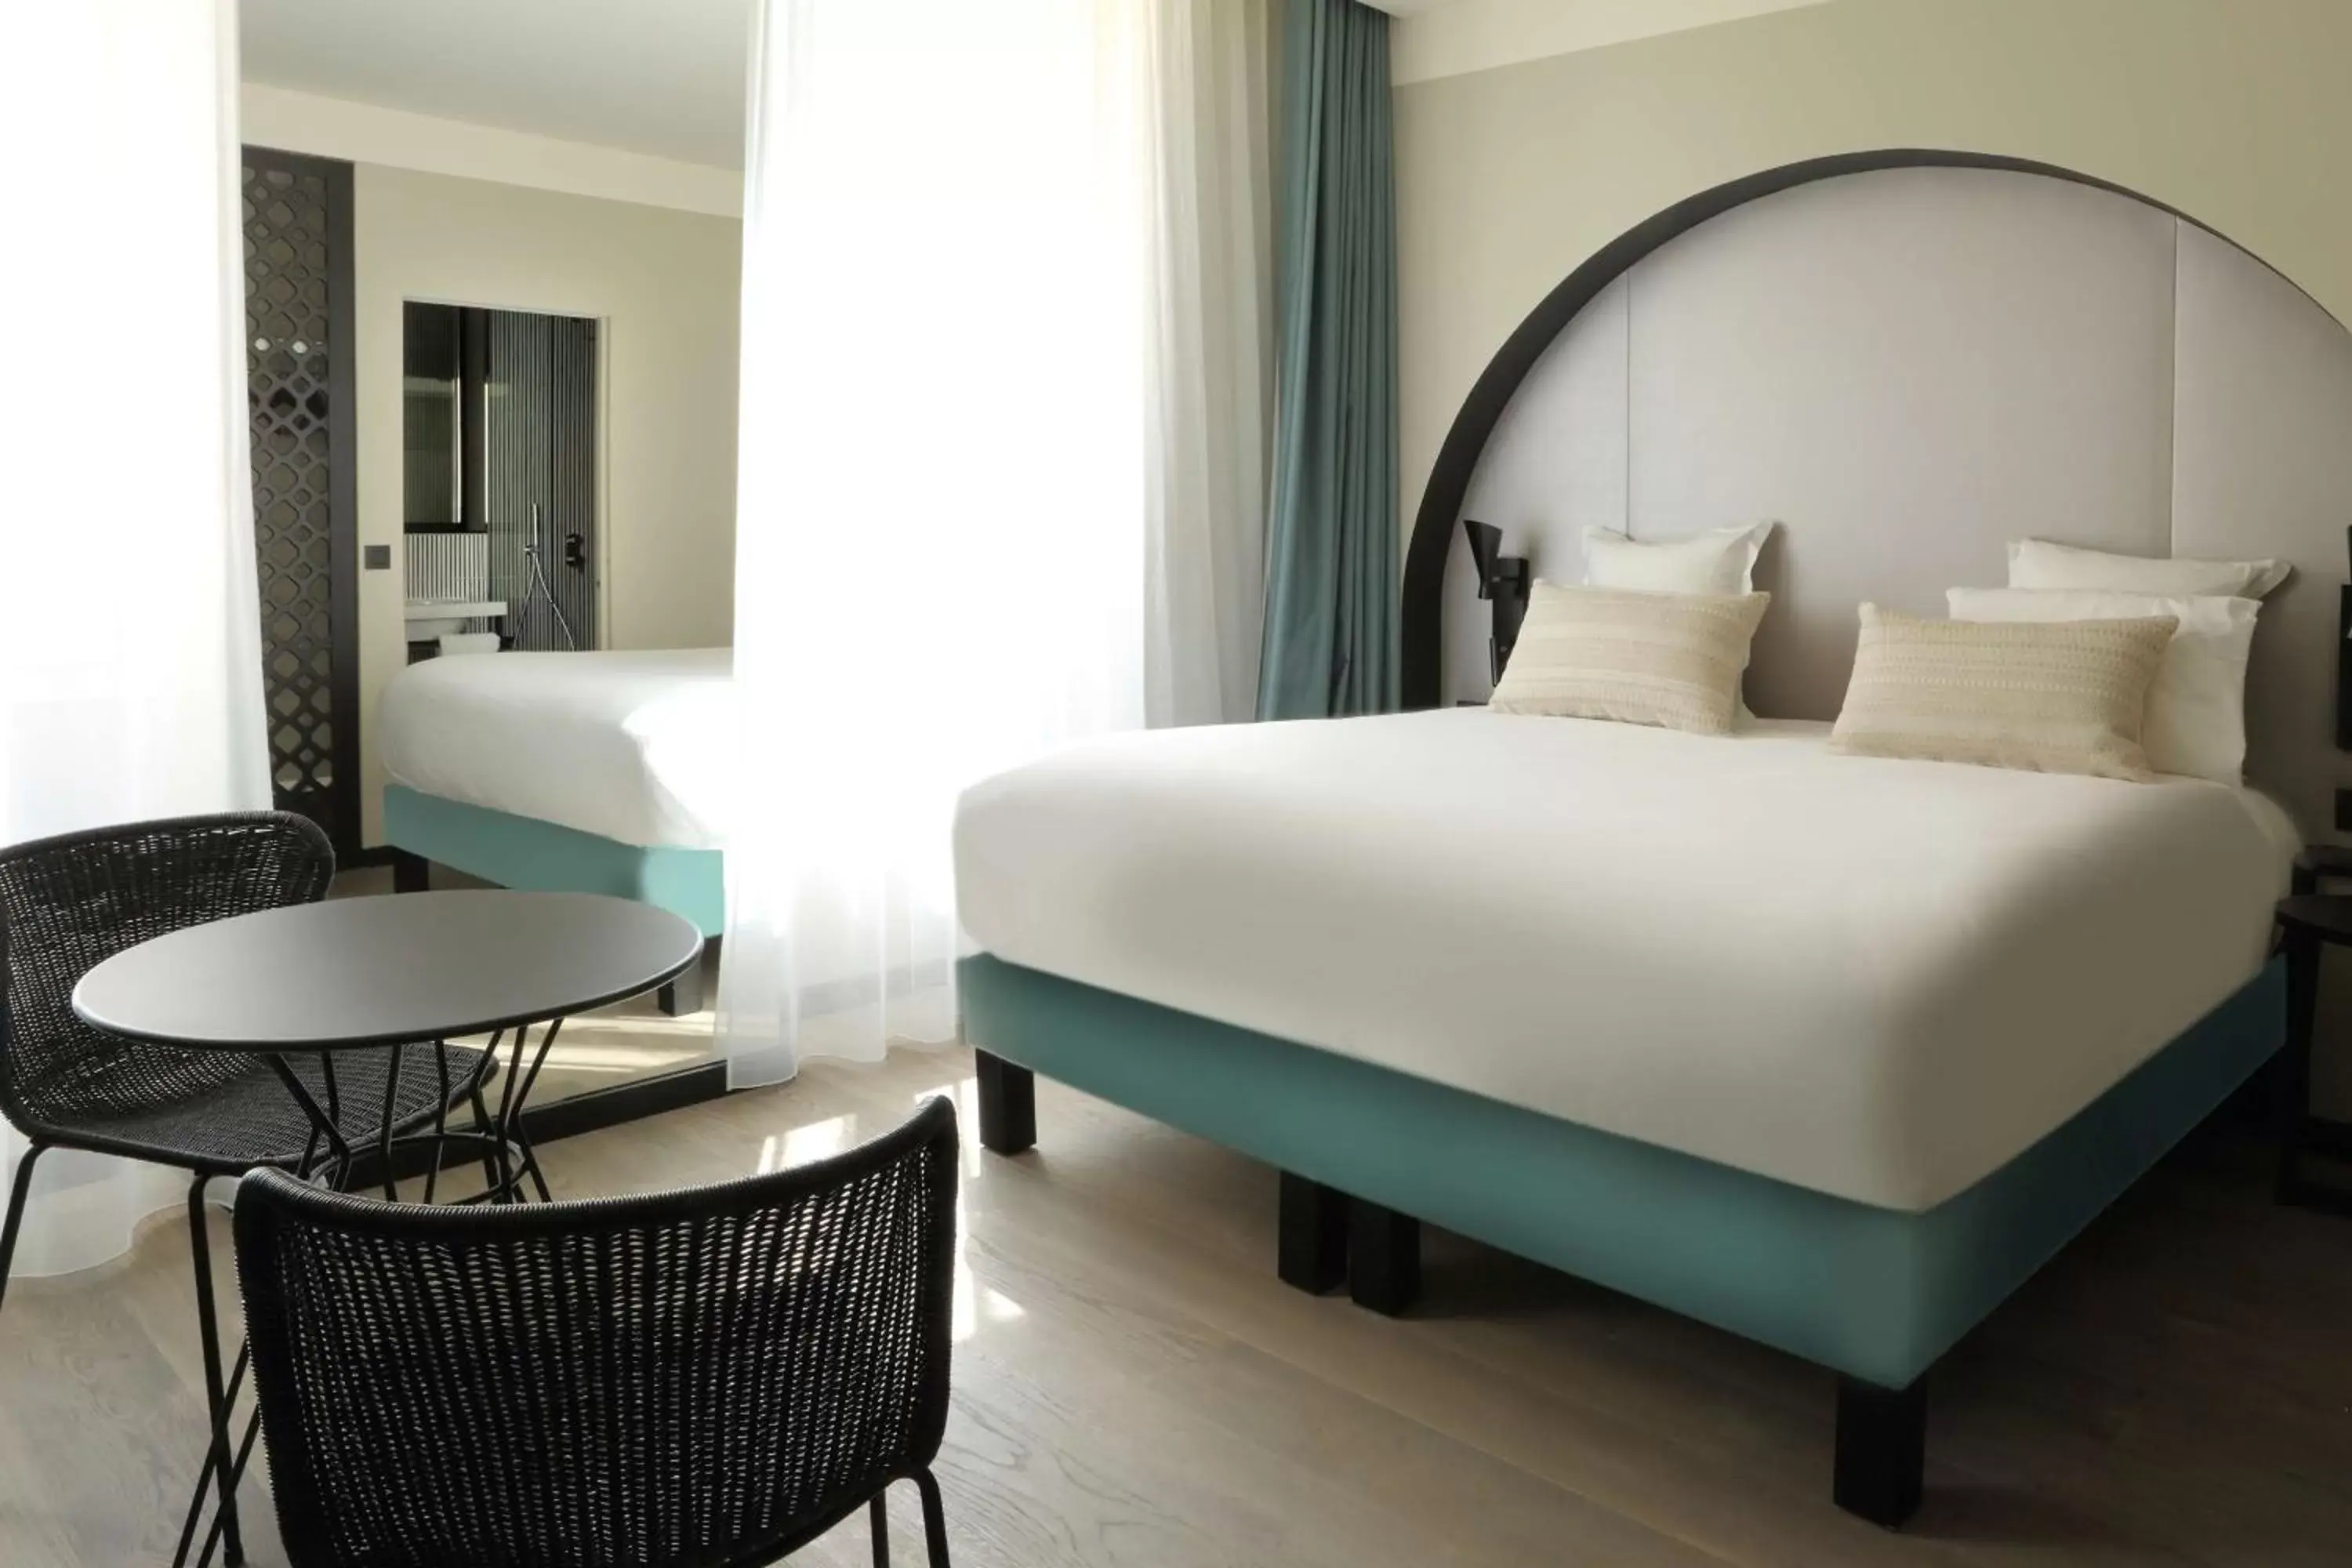 Photo of the whole room, Bed in Best Western Plus Hôtel La Joliette